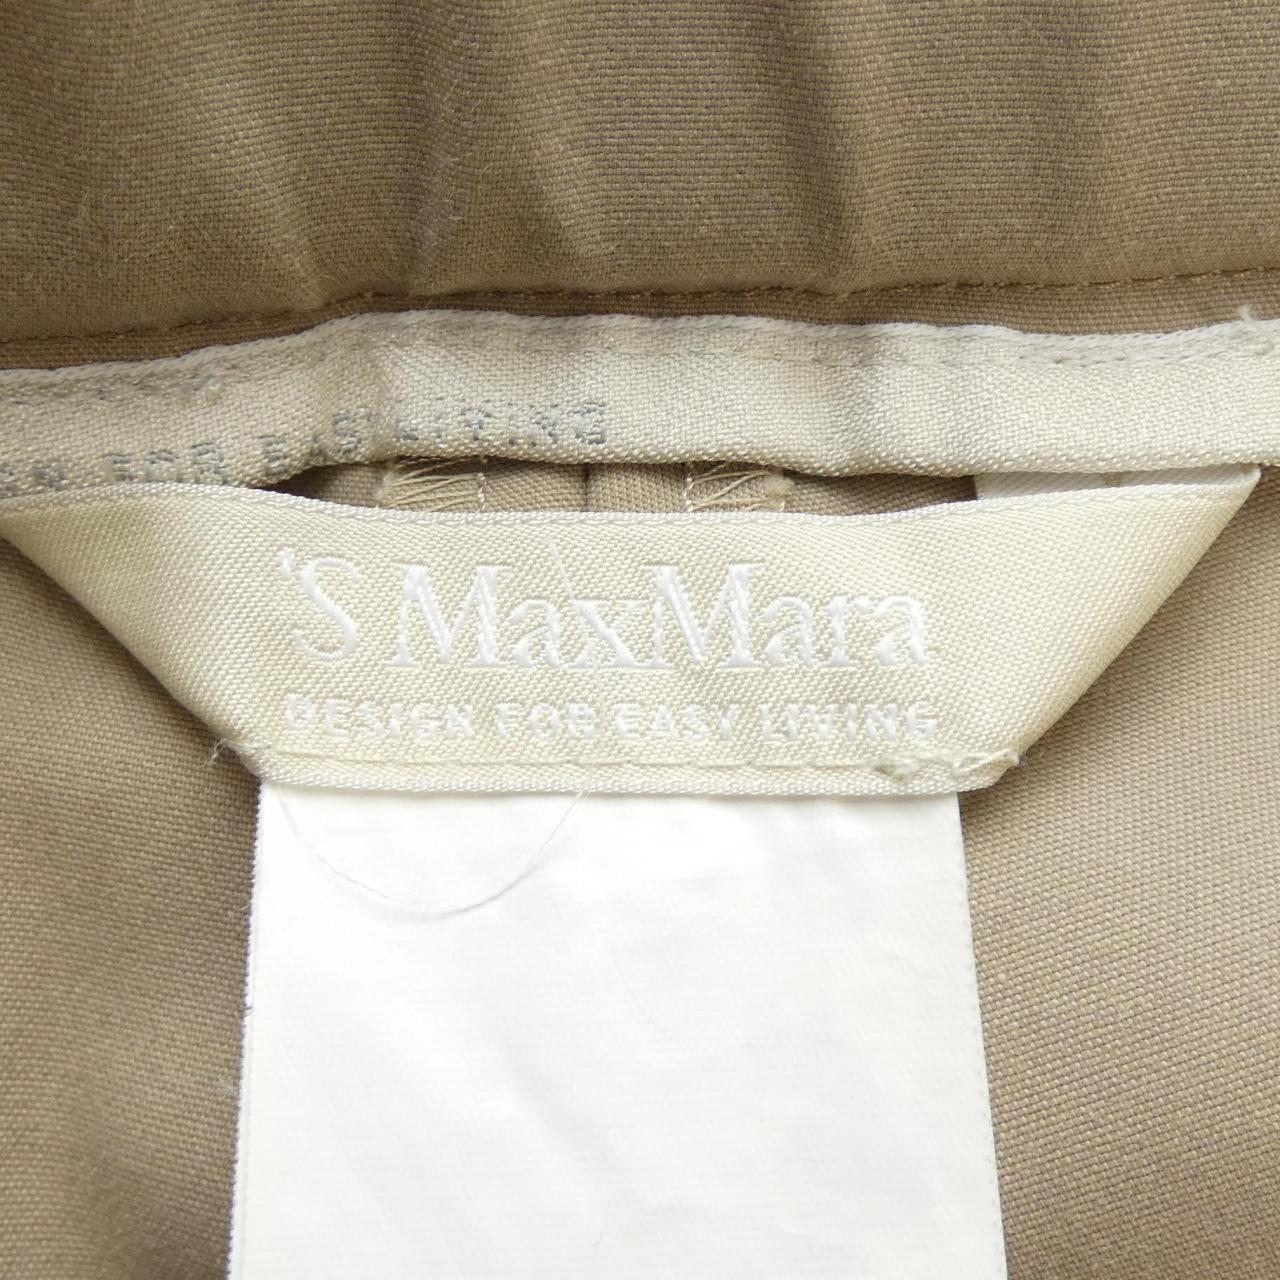 Es Max Mara's Max Mara Pants